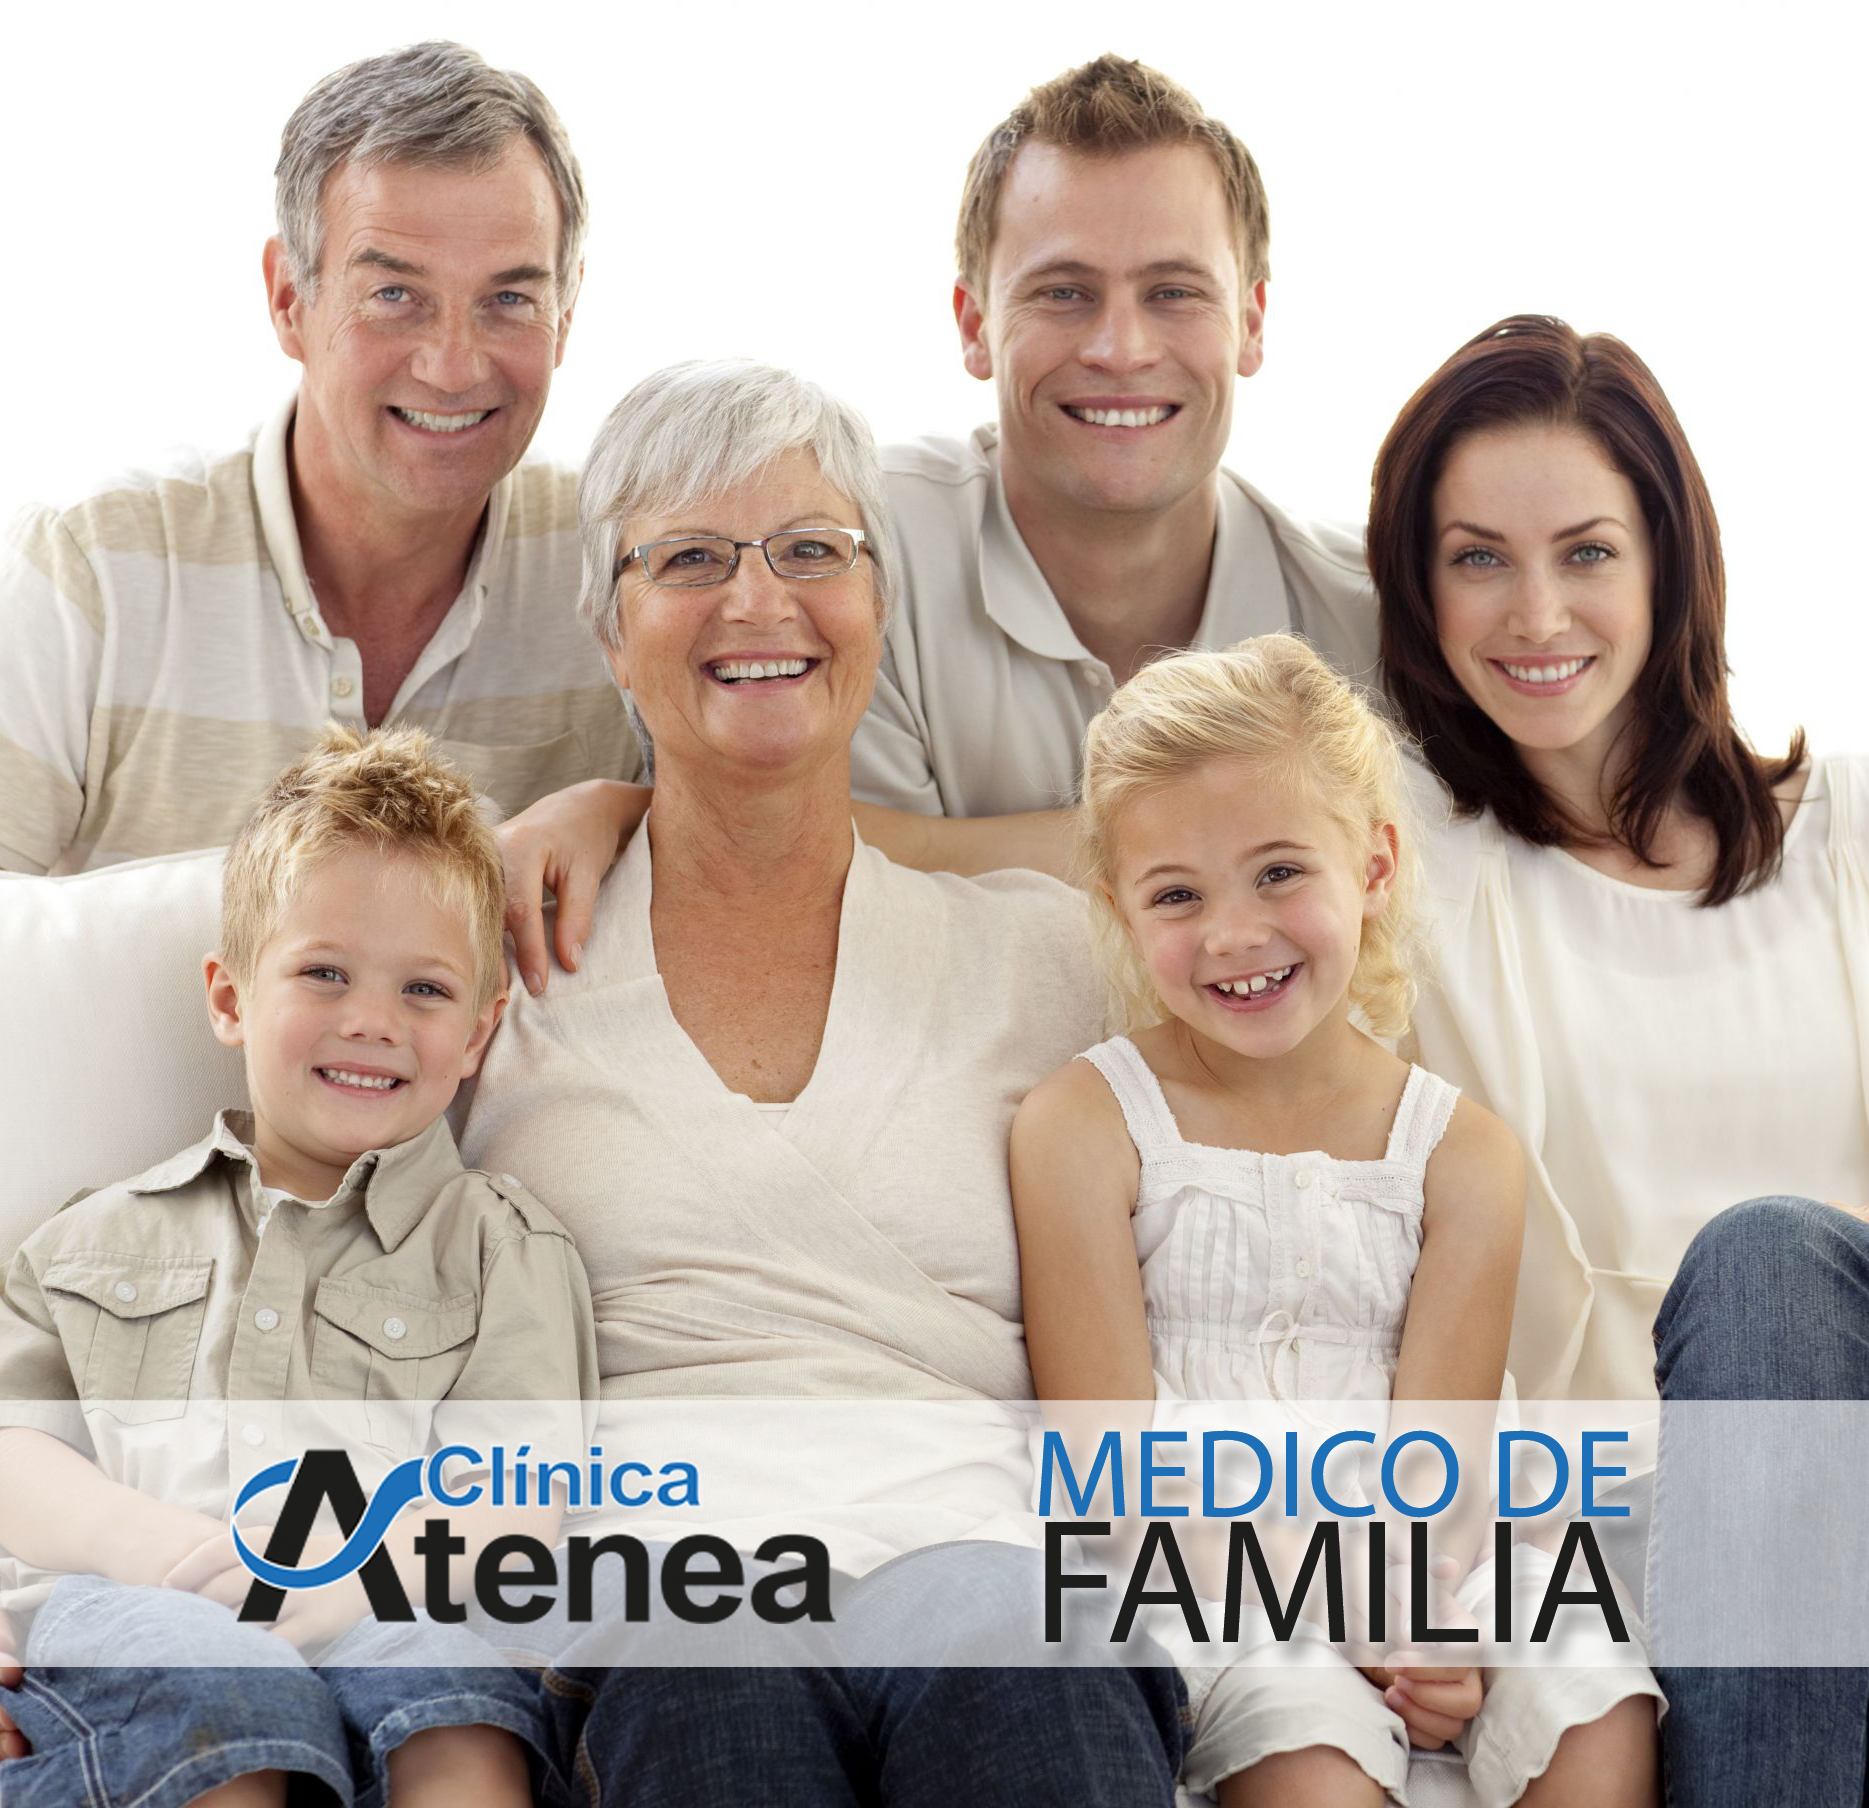 médico de familia clínica Atenea